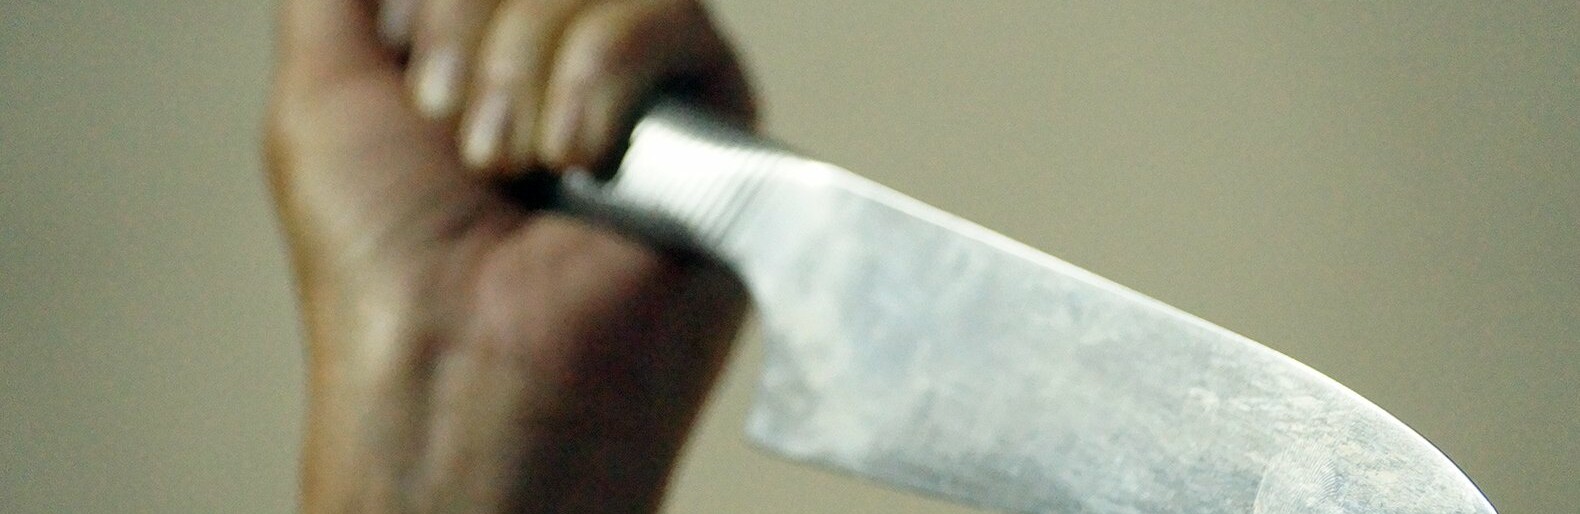 51-летняя белгородка ударила возлюбленного ножом в спину из-за обвинения в измене